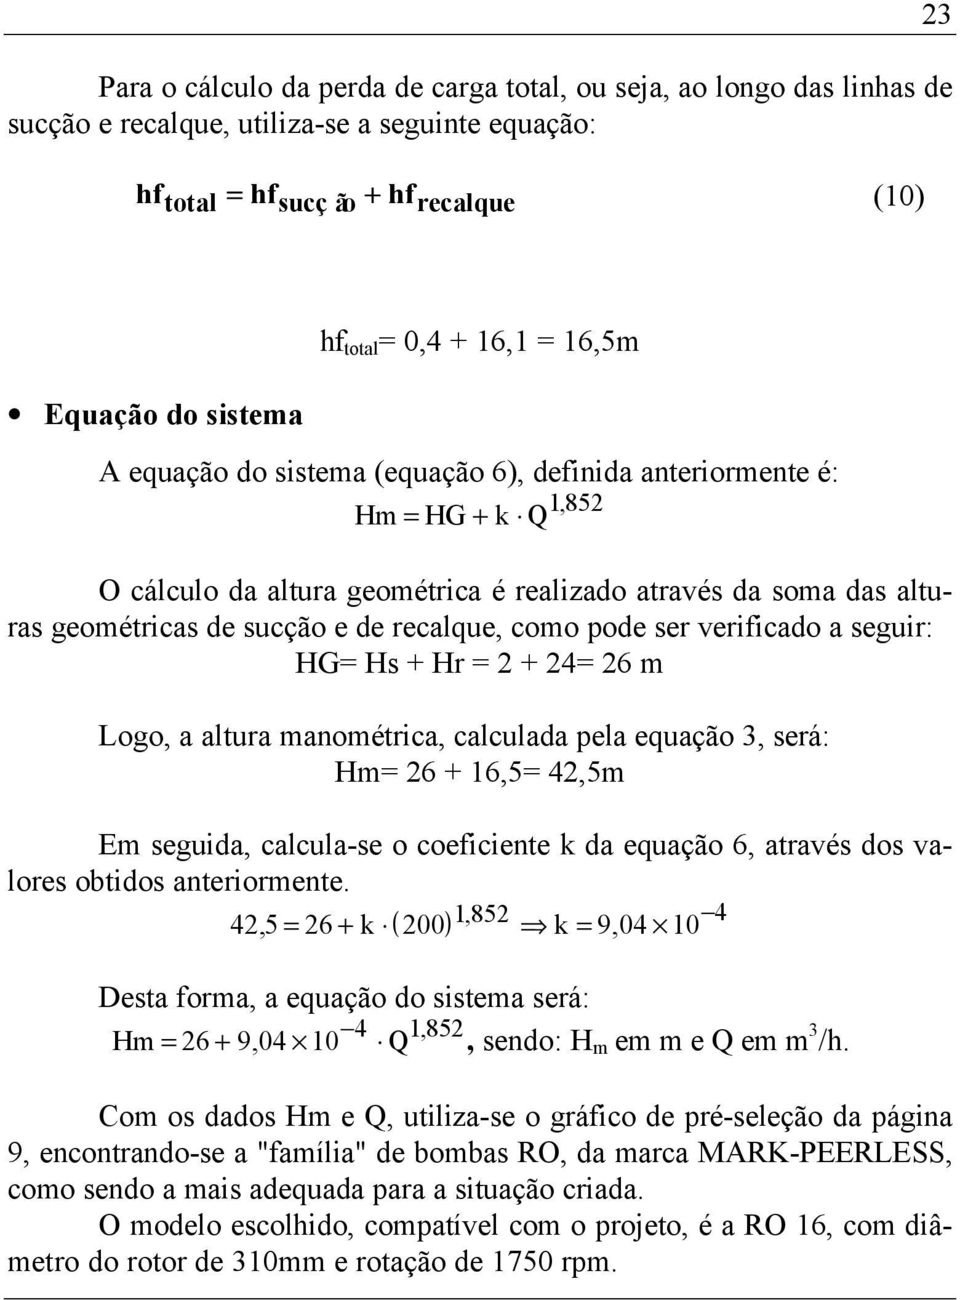 recalque, como pode ser verificado a seguir: HG= Hs + Hr = 2 + 24= 26 m Logo, a altura manométrica, calculada pela equação 3, será: Hm= 26 + 16,5= 42,5m Em seguida, calcula-se o coeficiente k da